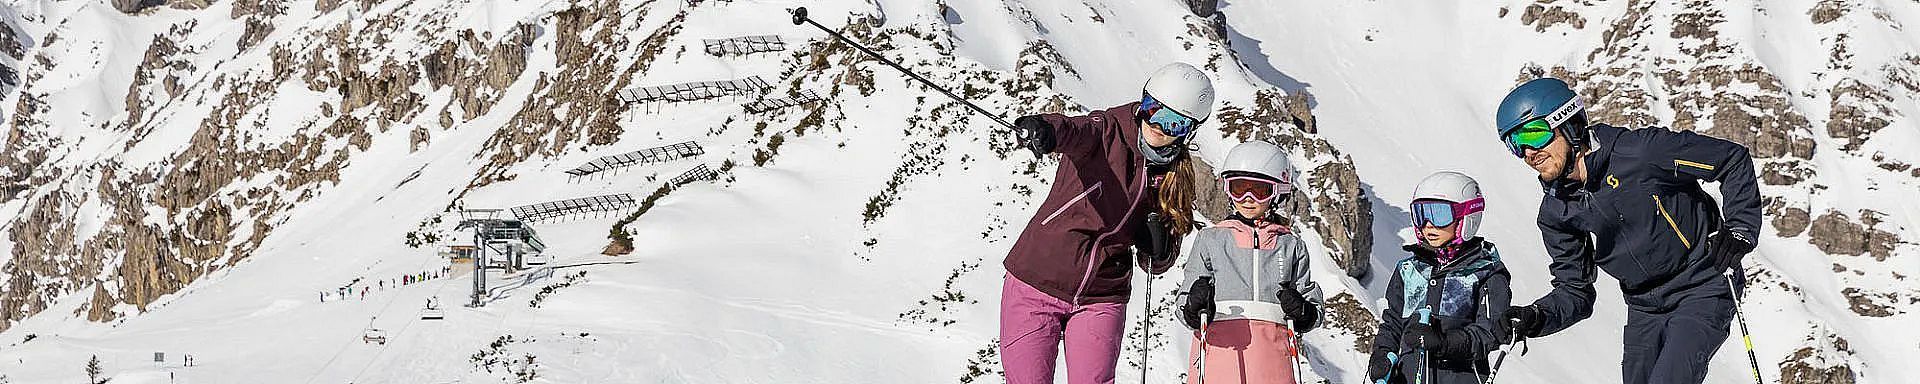 brandnertal-winter-skigebiet-skifahren-familie